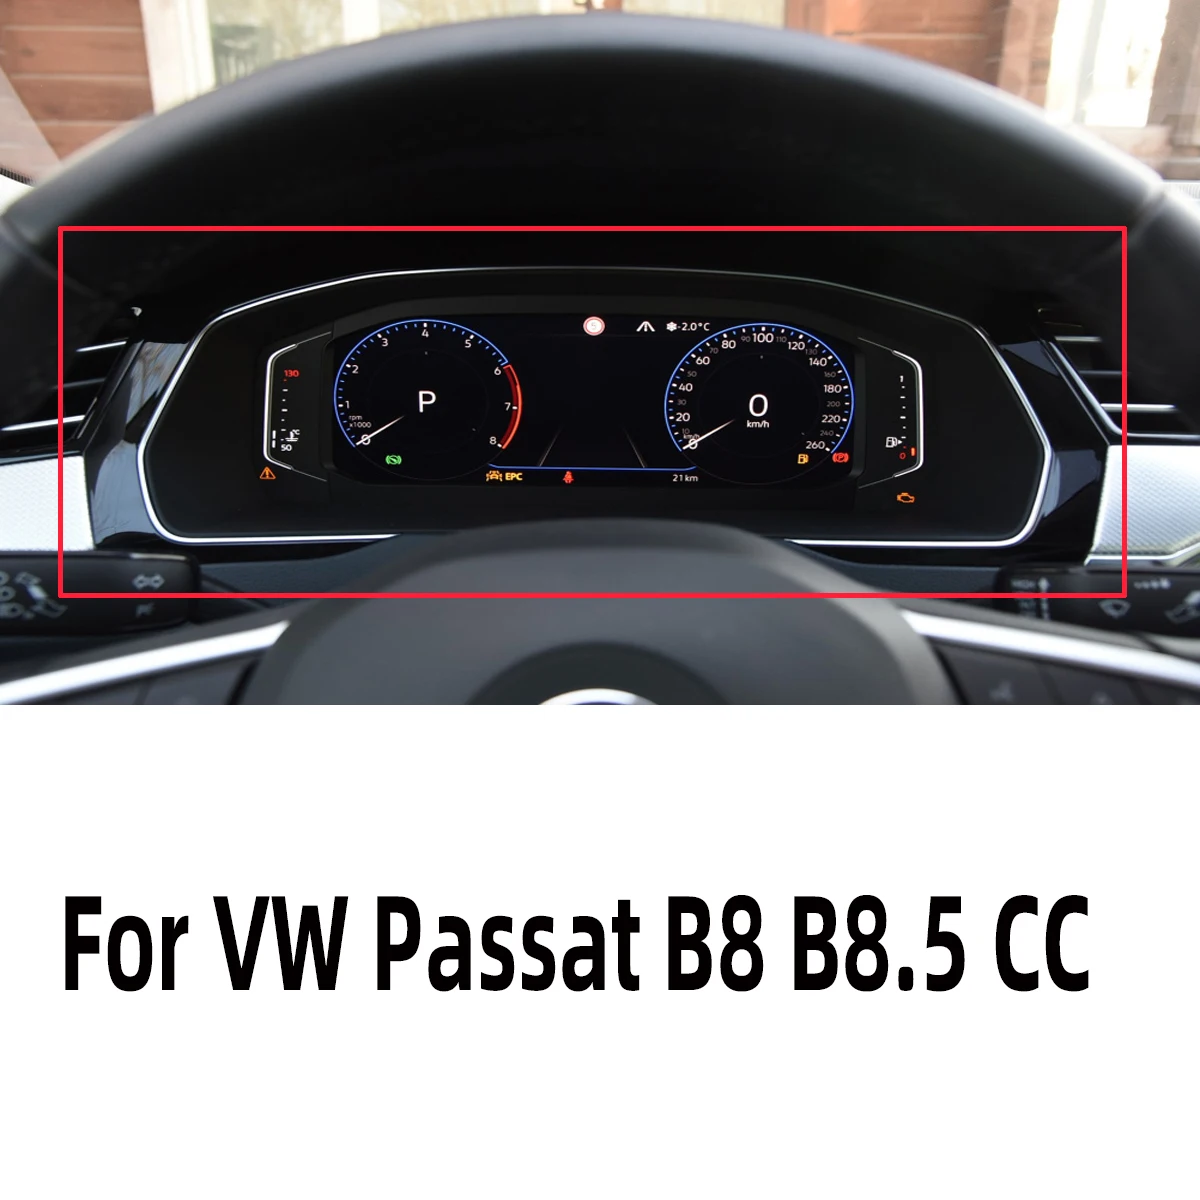 

New Car Steering Wheel LCD Virtual Instrument Frame for VW Passat B8 B8.5 2018 2019 2020 3GD 858 366 D 3GD 857 053 A 3GD858366D